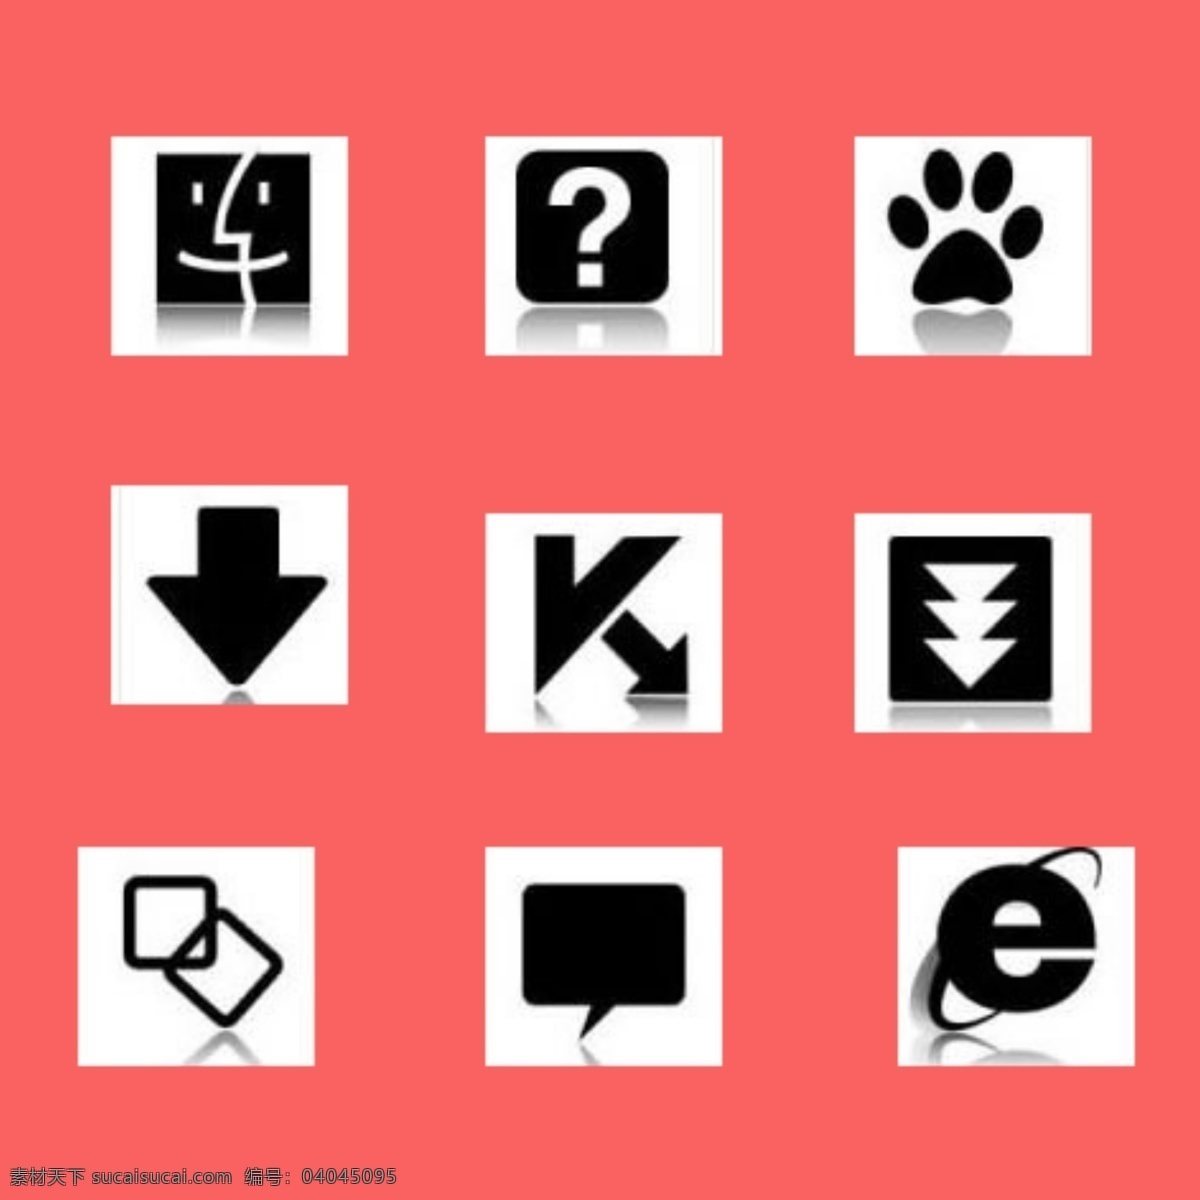 箭头 展示 图 箭头符号 箭头素材 电脑箭头图标 手机 app app图标